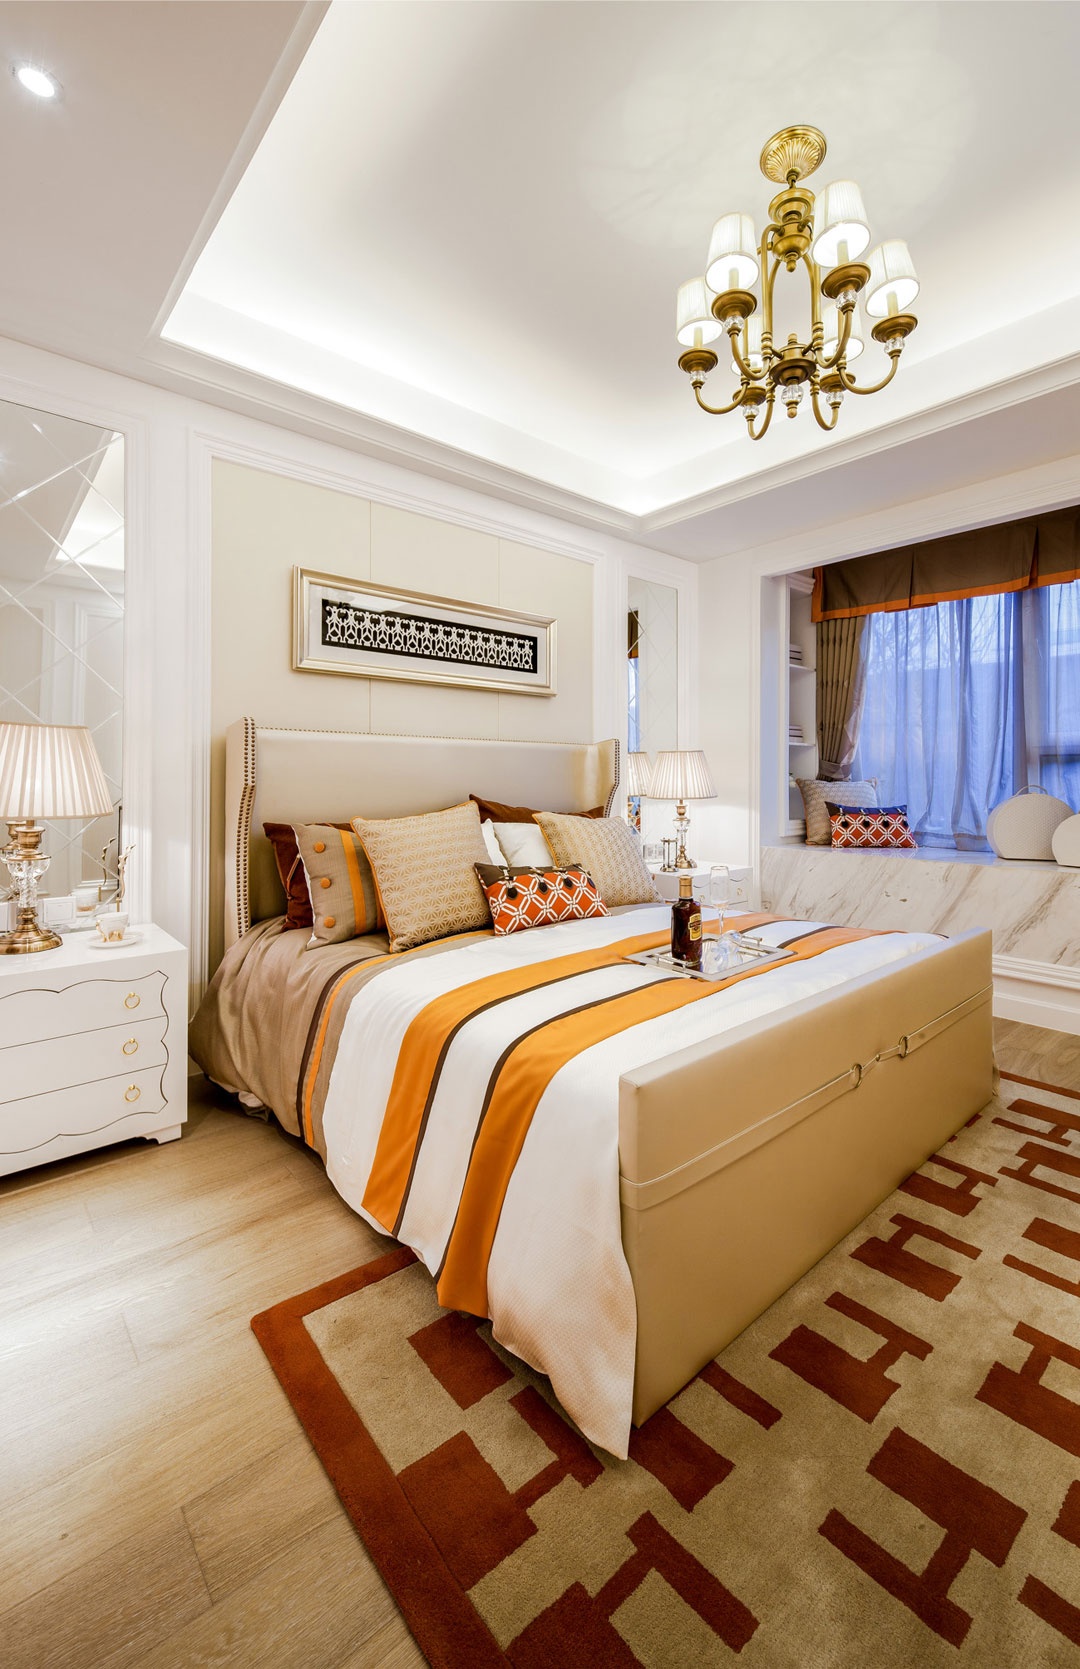 整体空间的色彩以米橘色为主，床头板墙以浅色装饰并配有艺术皮革床，精致大气。